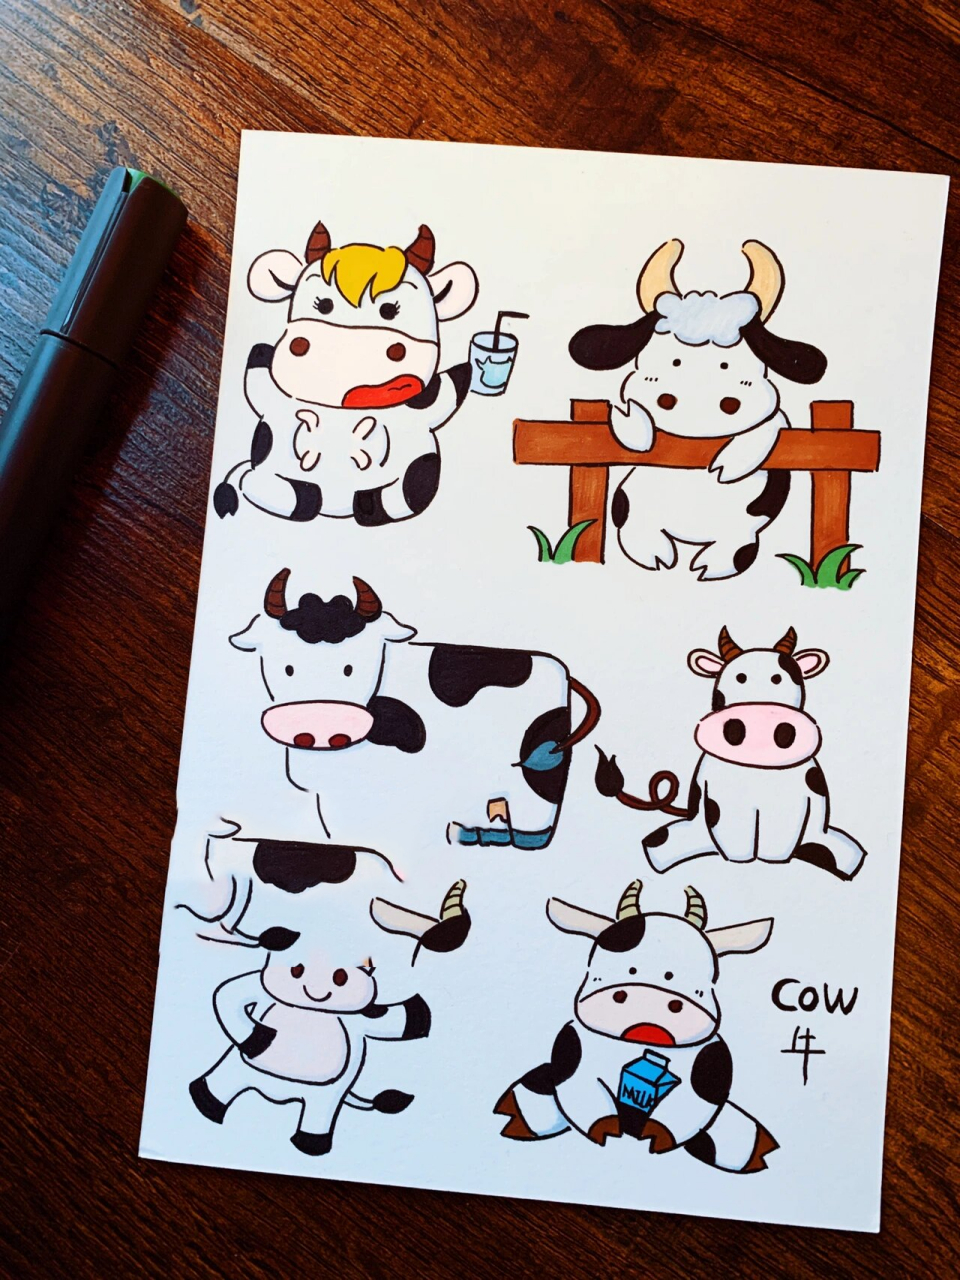 奶牛98手绘手帐简笔画素材练习线稿上色图 超级呆萌可爱的小奶牛,之